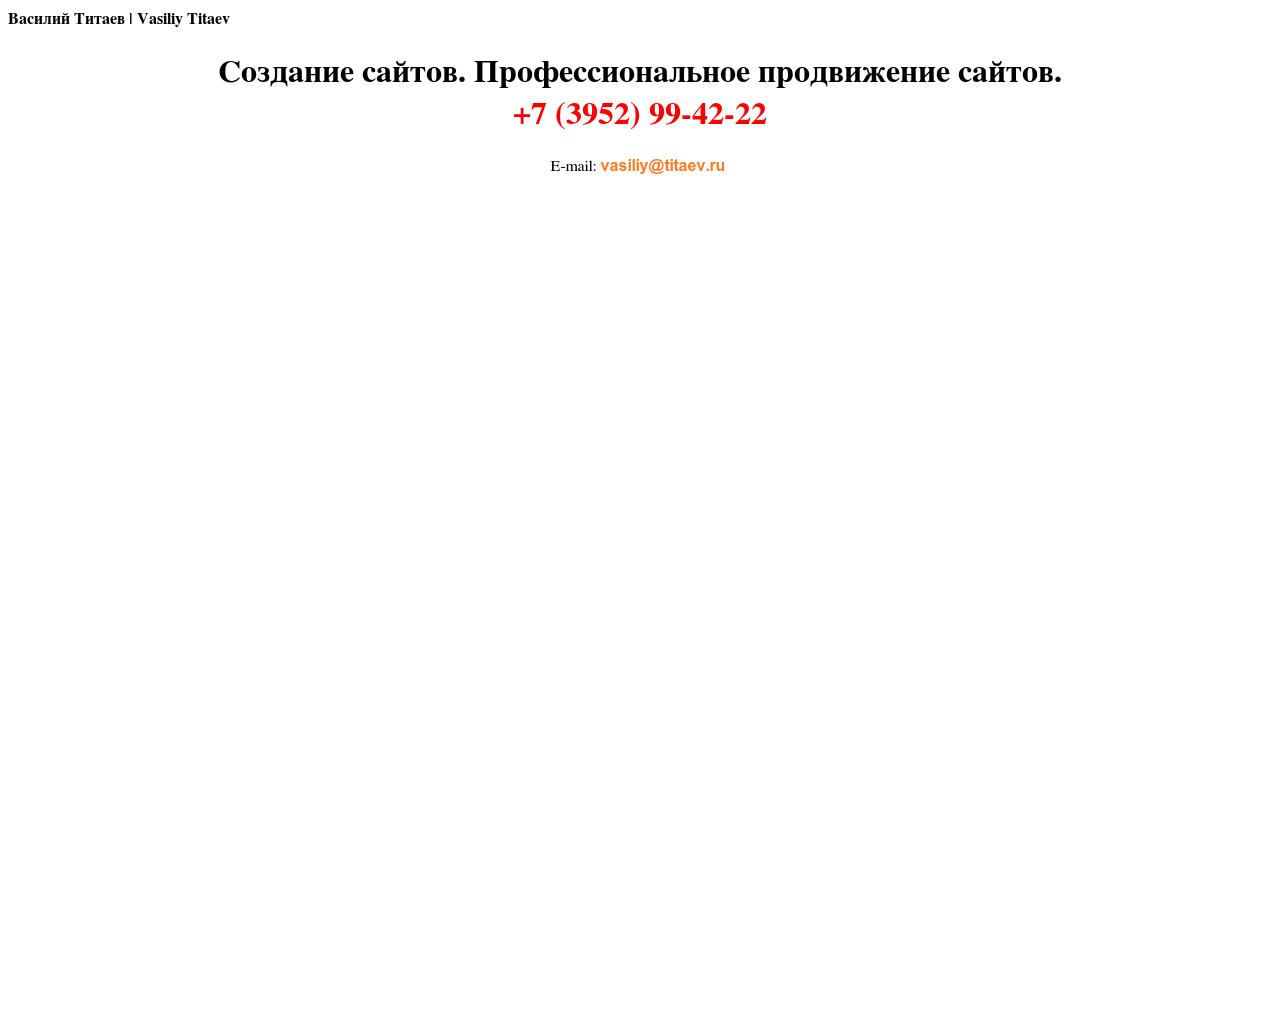 Изображение сайта titaev.ru в разрешении 1280x1024